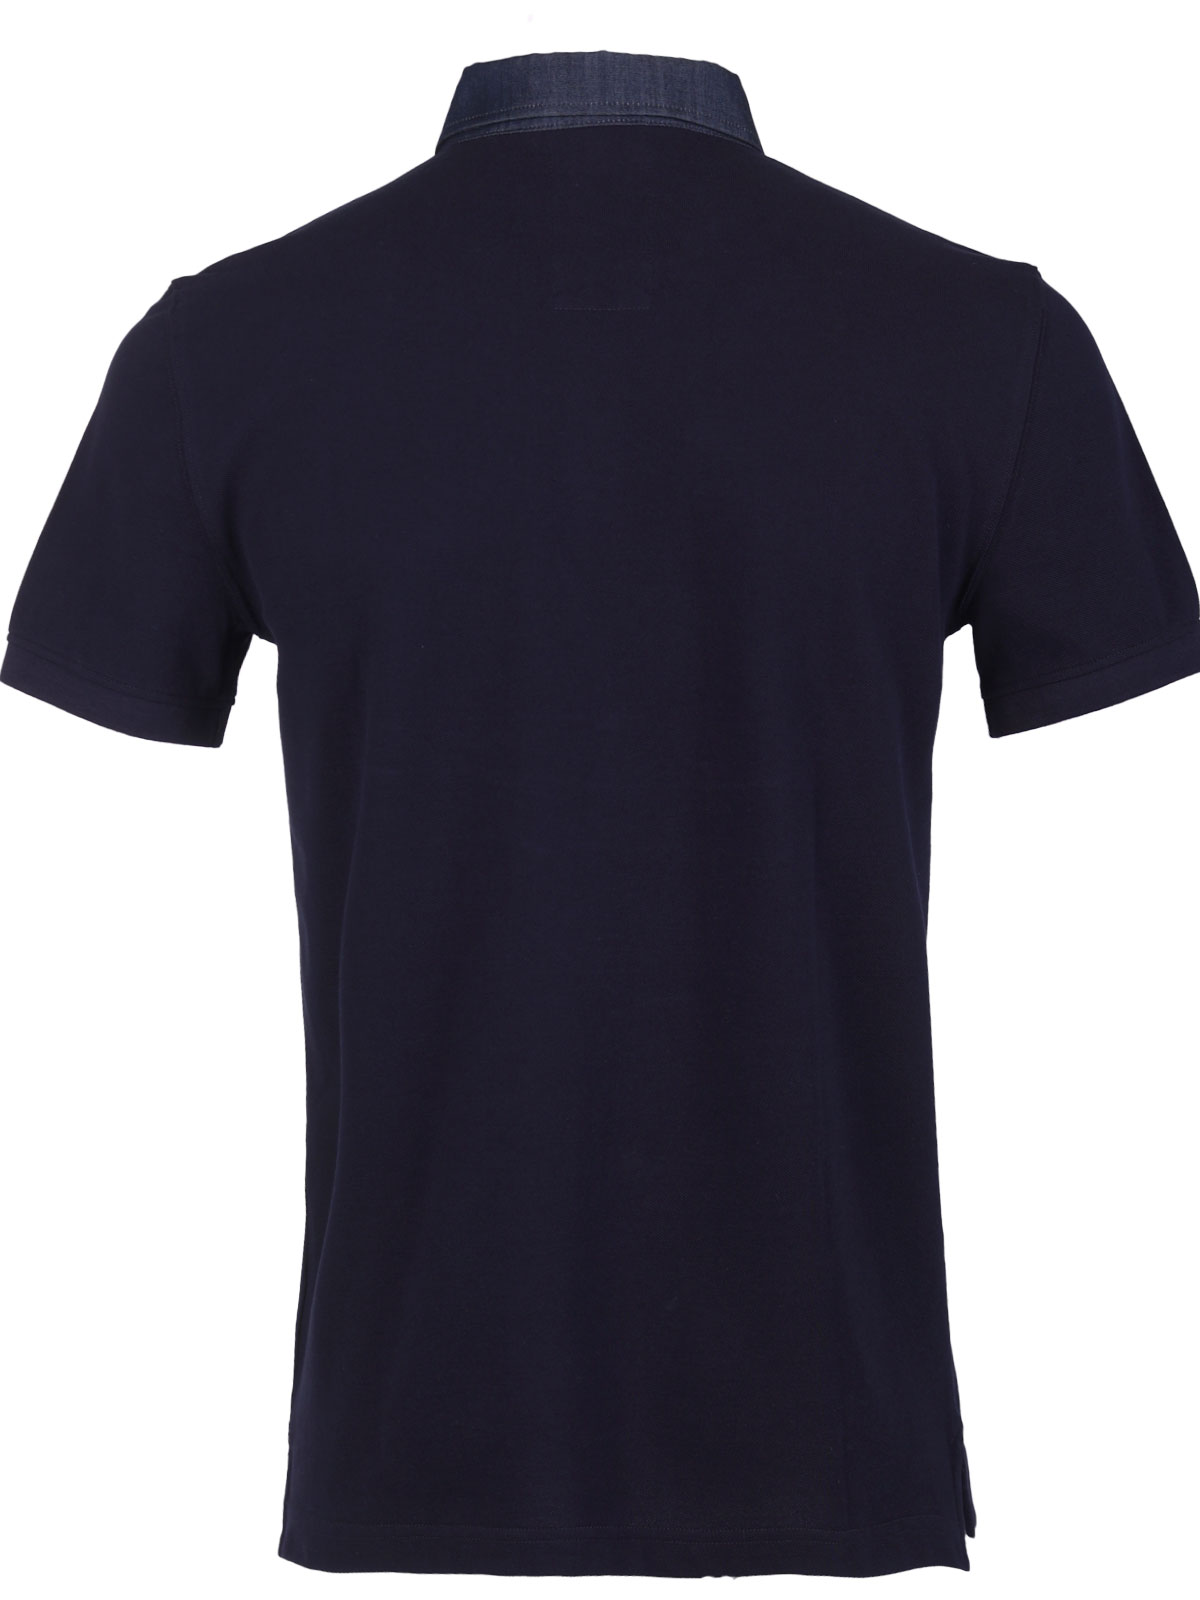 Μπλούζα με κοντό μανίκι σε σκούρο μπλε - 93433 € 42.74 img2